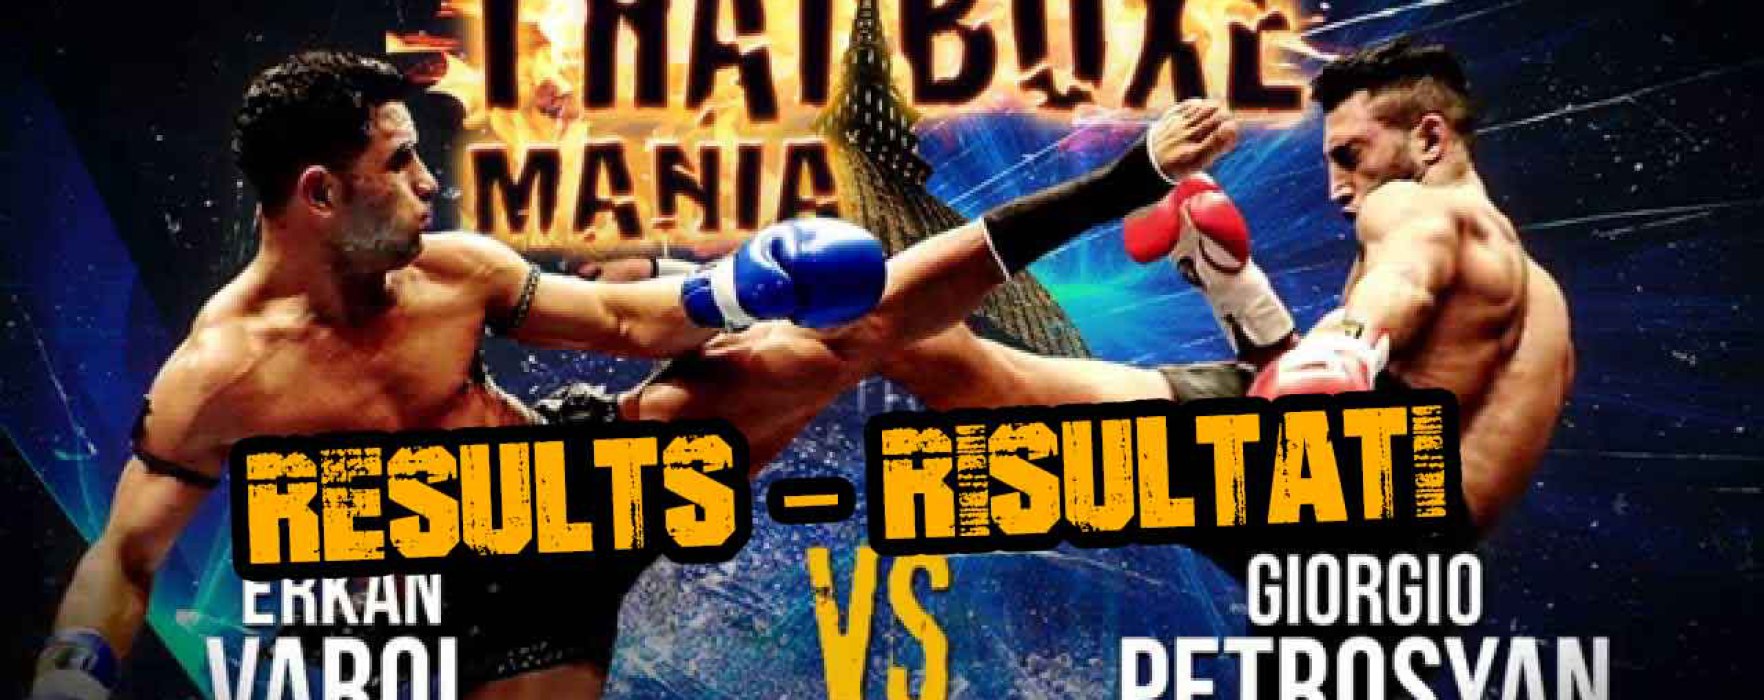 Results: Giorgio Petrosyan wins over Erkan Varol – Thai Boxe Mania 2015 – Turin – 25/1/15